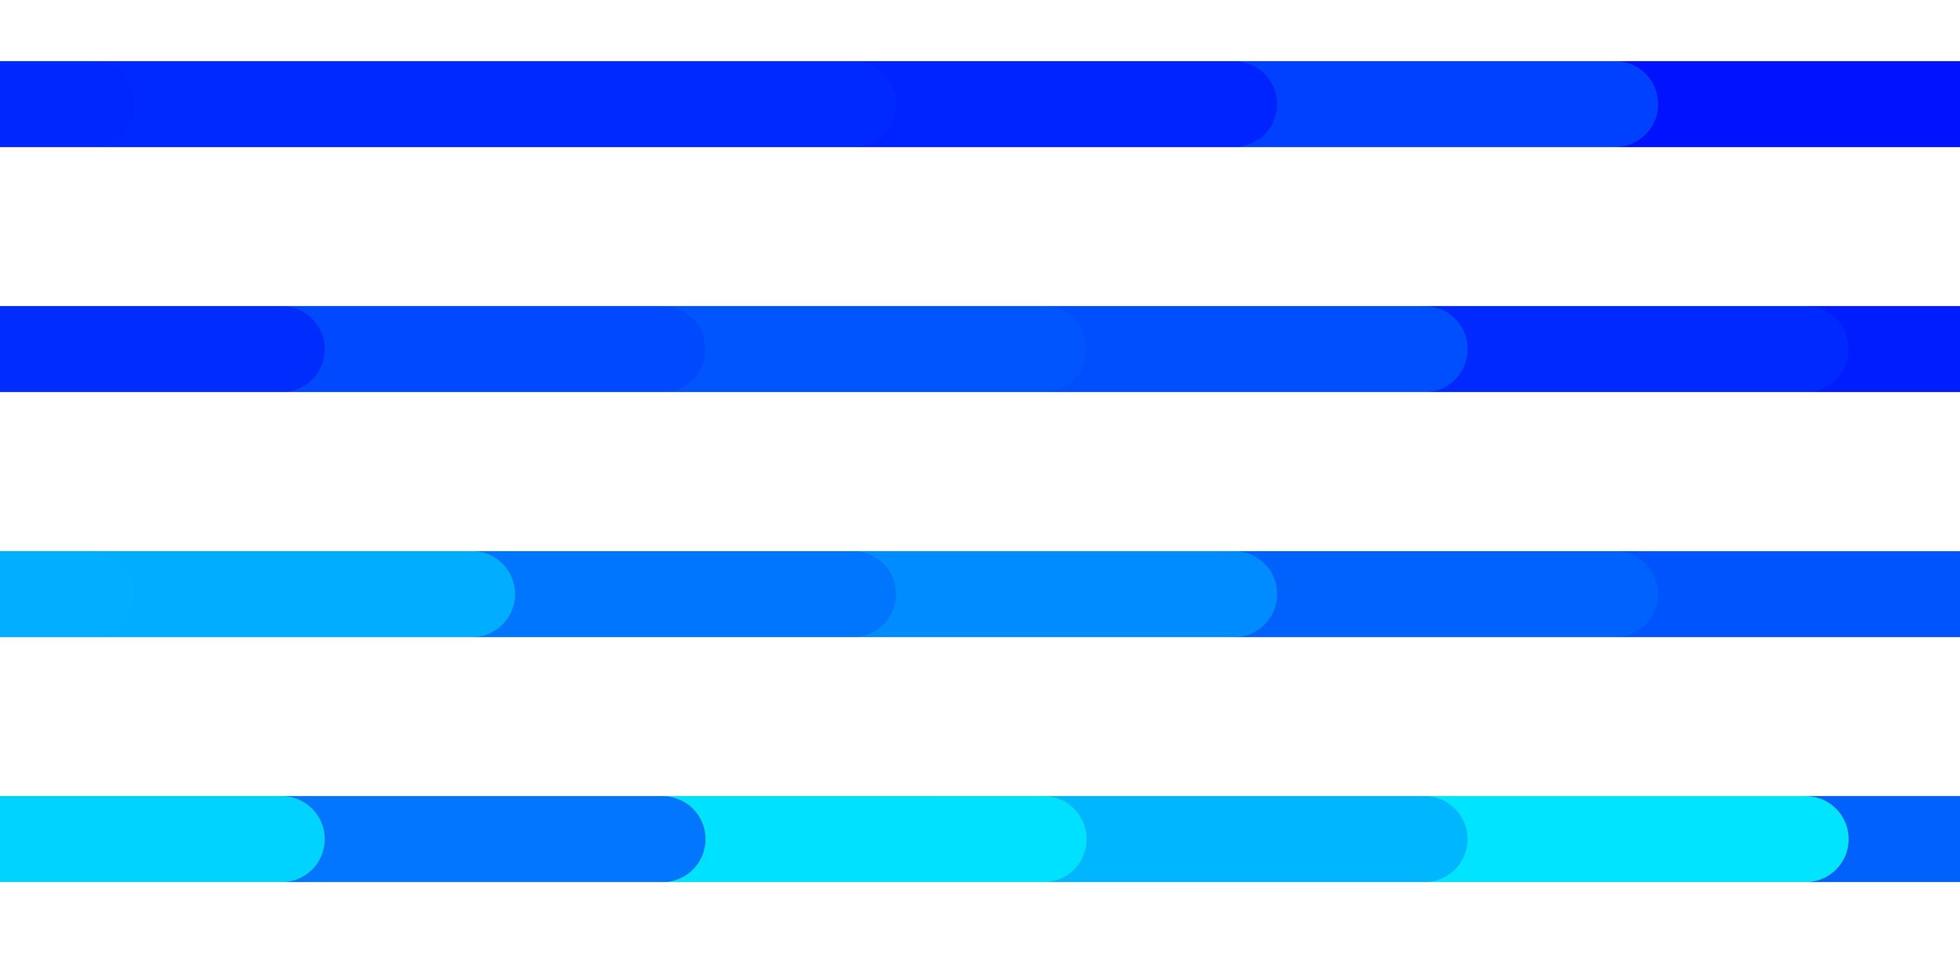 pano de fundo azul claro do vetor com linhas. ilustração gradiente colorida com linhas planas abstratas. padrão para sites, páginas de destino.